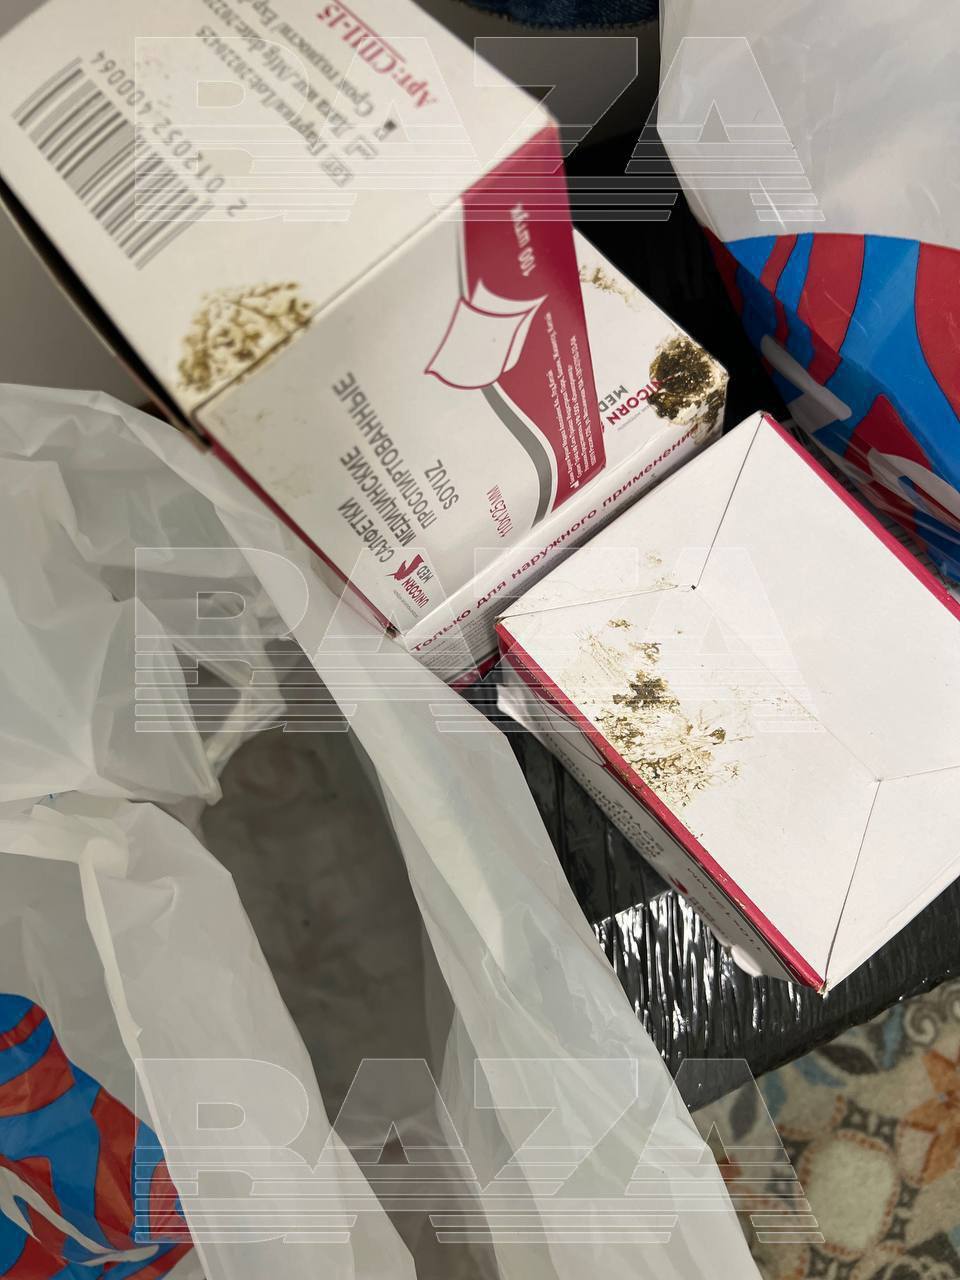 Baza: москвич получил от OZON обмазанные фекалиями посылки с салфетками